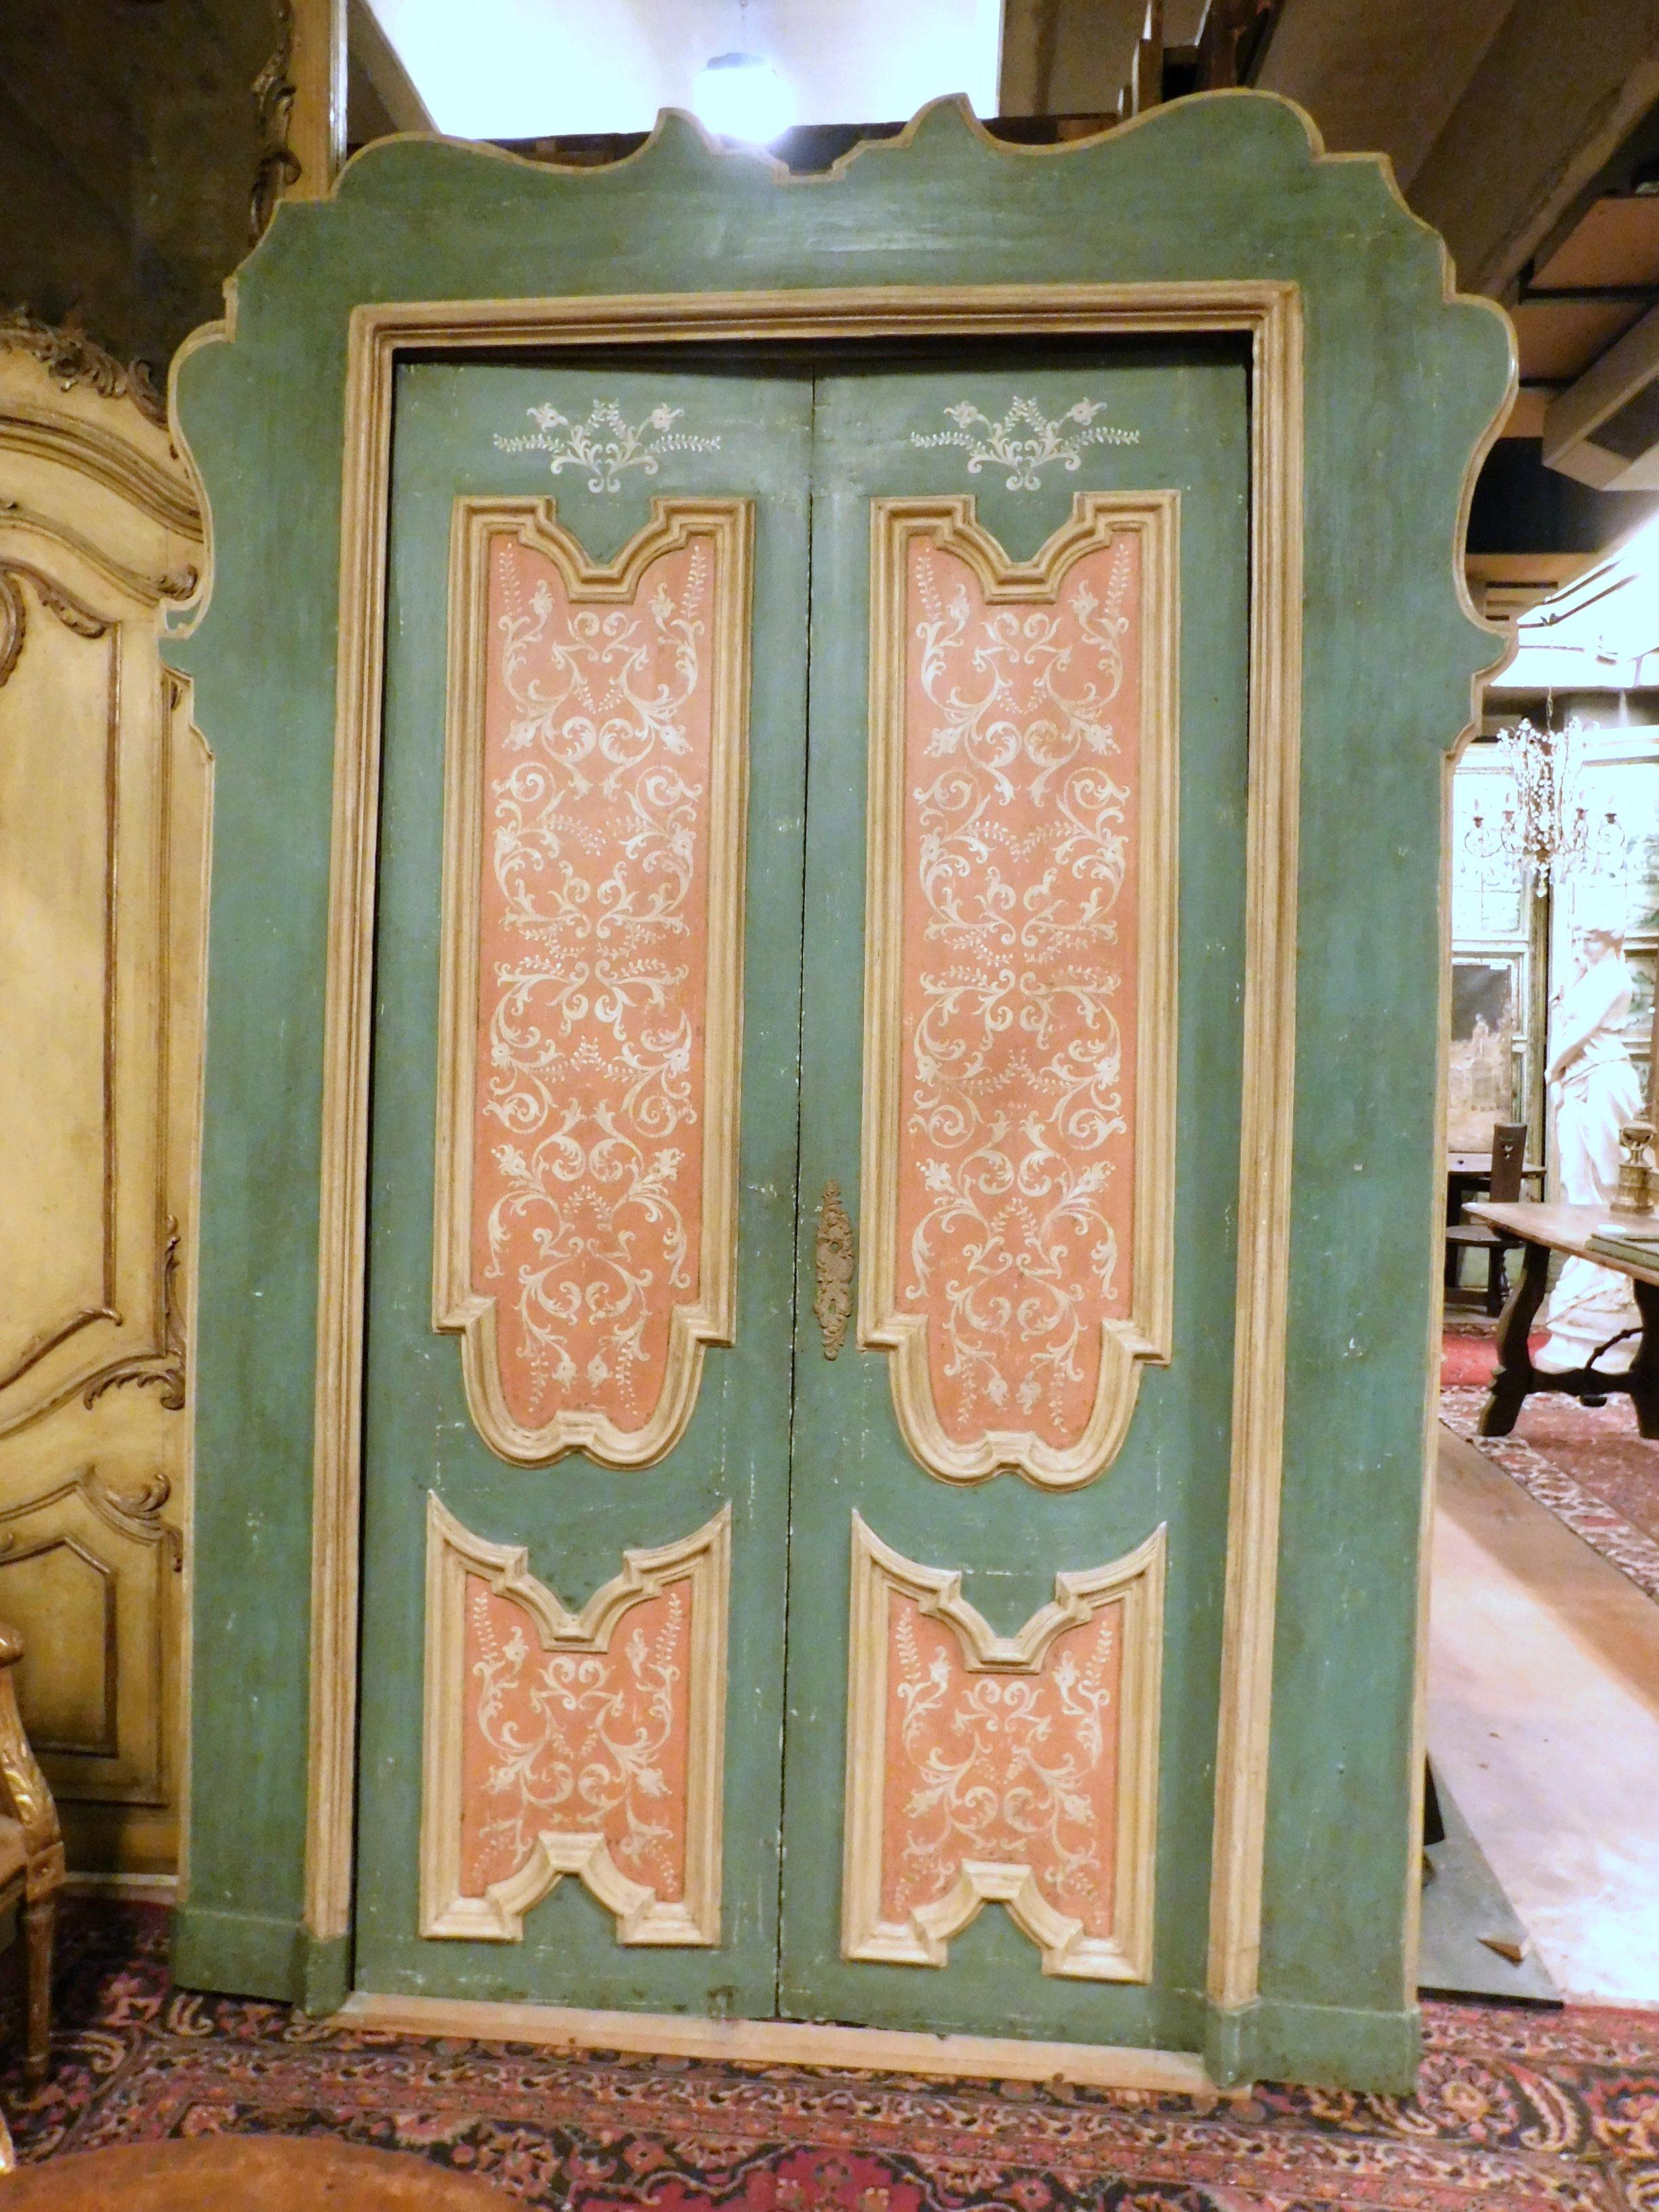 Paire de portes d'intérieur anciennes, laquées à la main sur fond bleu et rose, avec des peintures blanches, complètes avec le cadre ondulé d'origine, portes typiques du XVIIIe siècle, provenant du hall d'un important bâtiment du centre de Rome